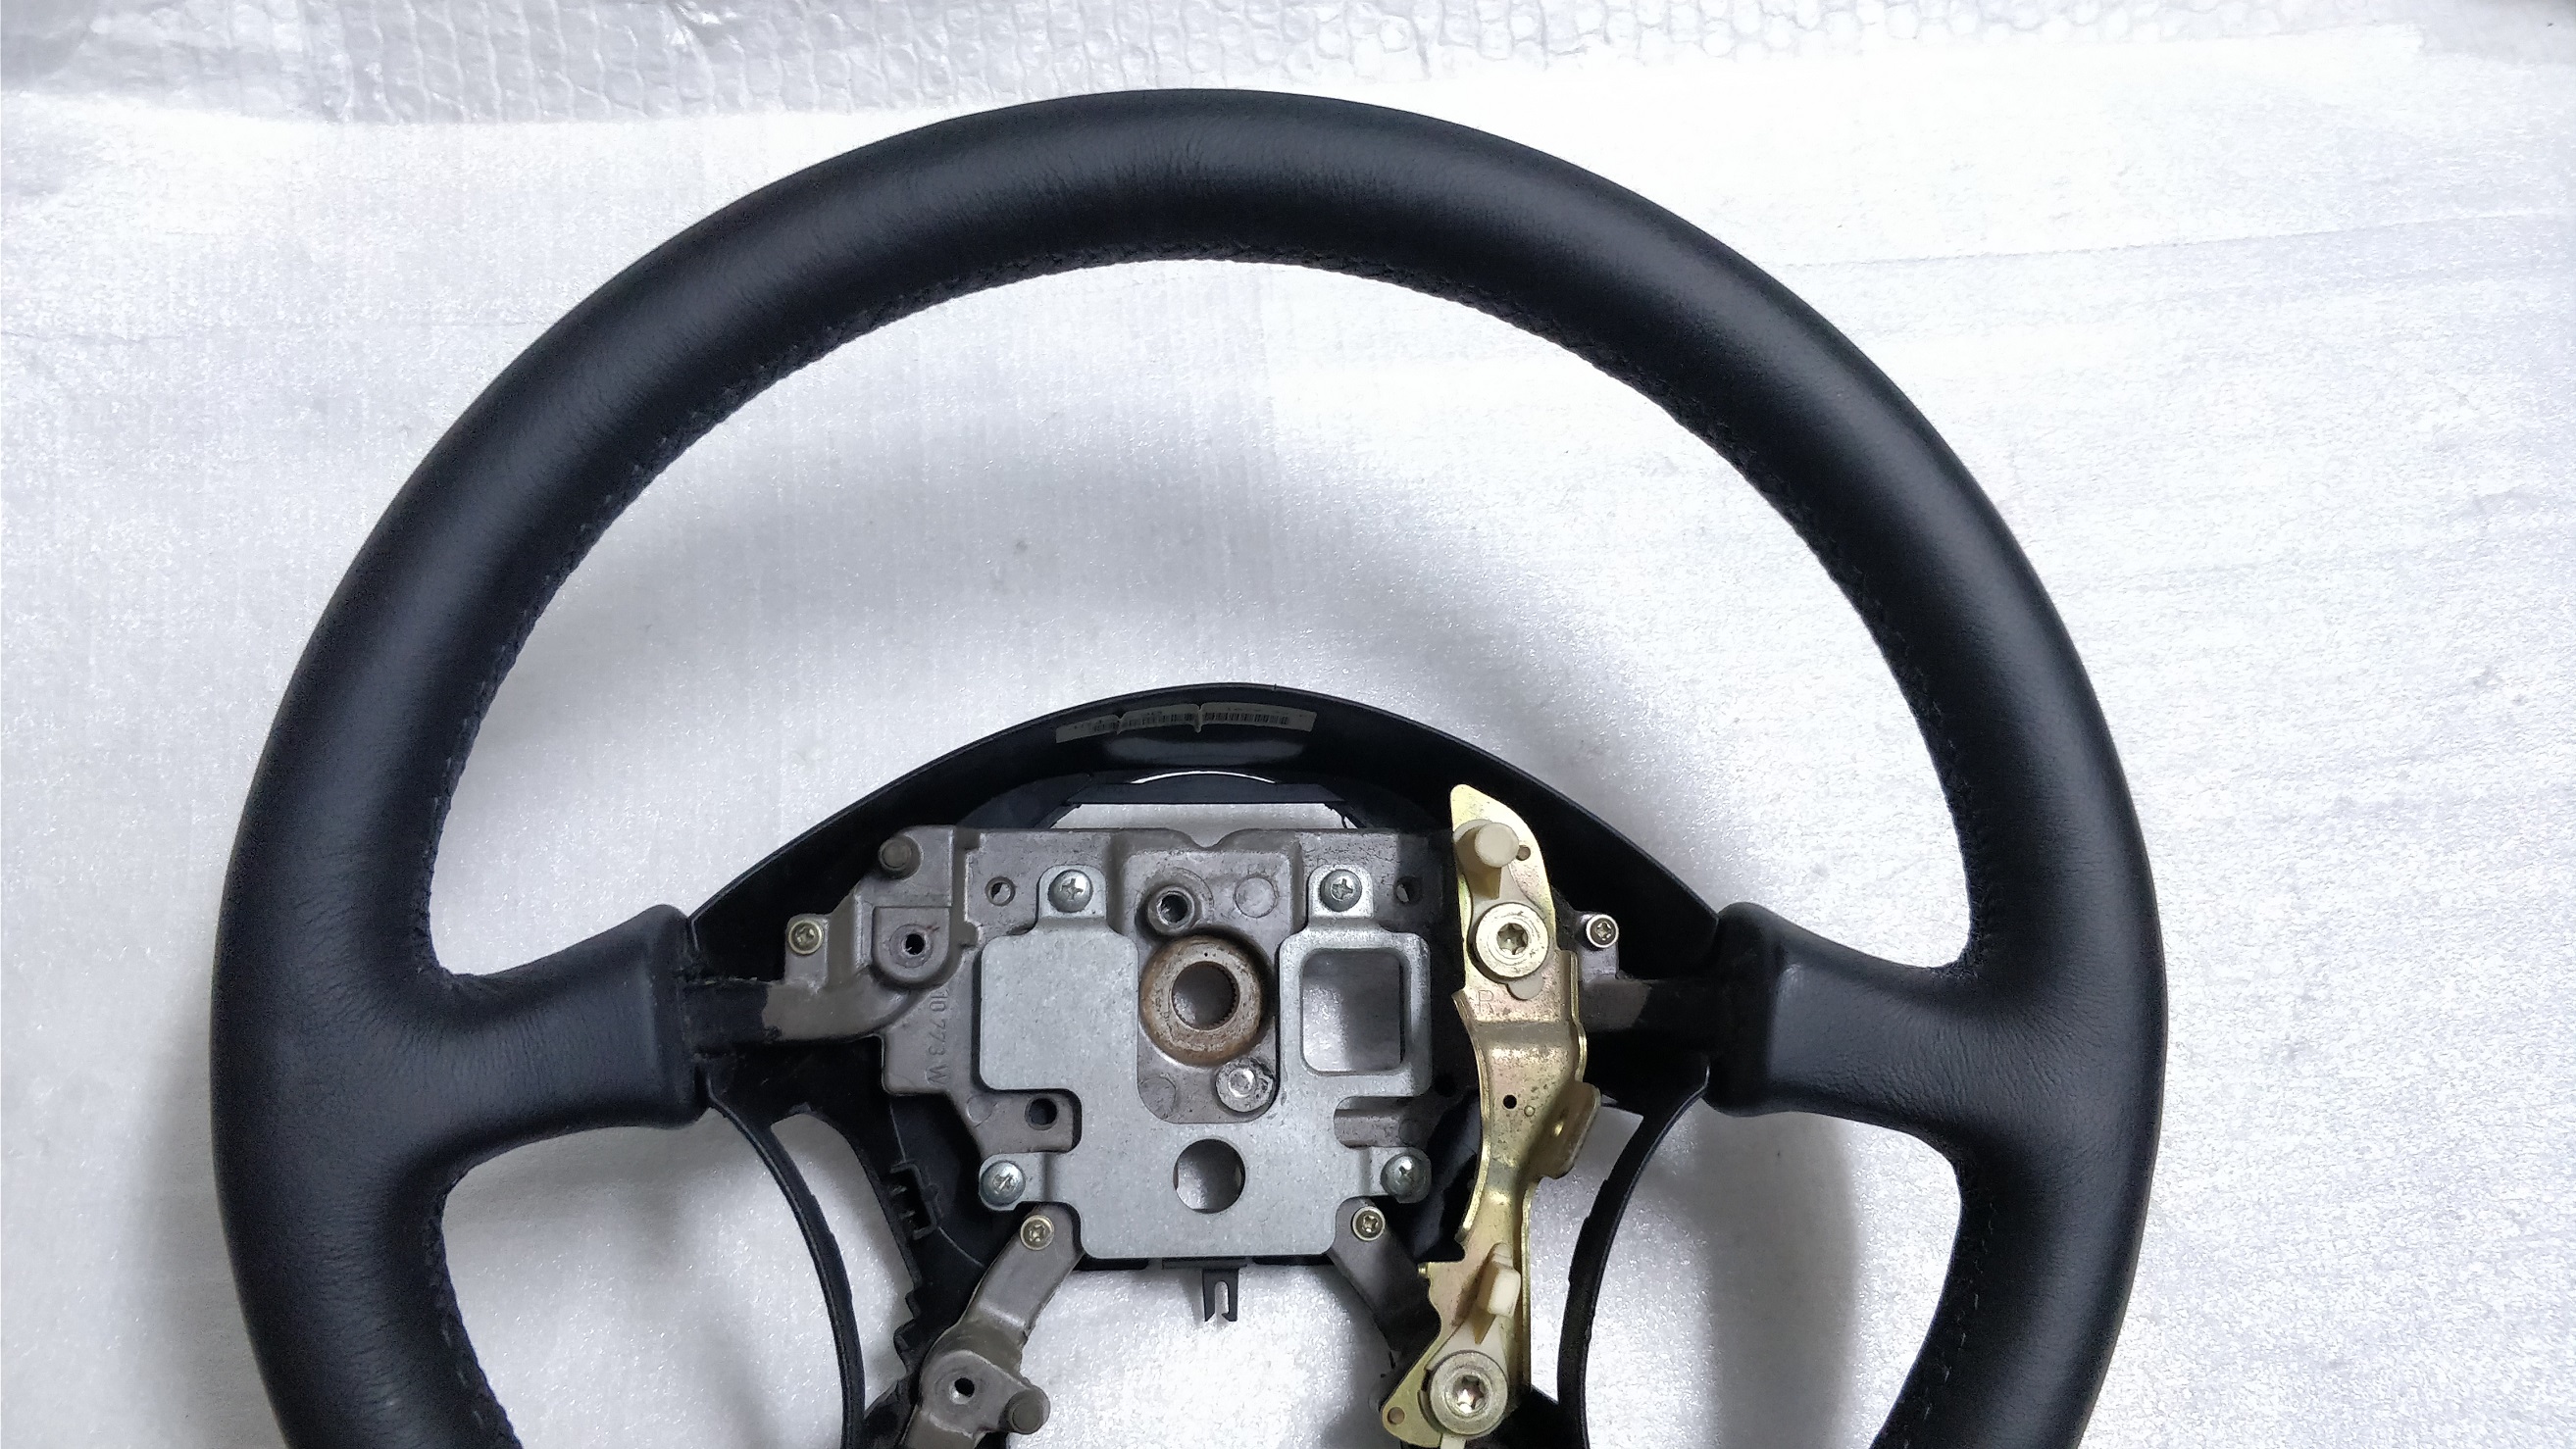 Leather Steering wheel Nissan Patrol Y60 Y61 Almera 6012373